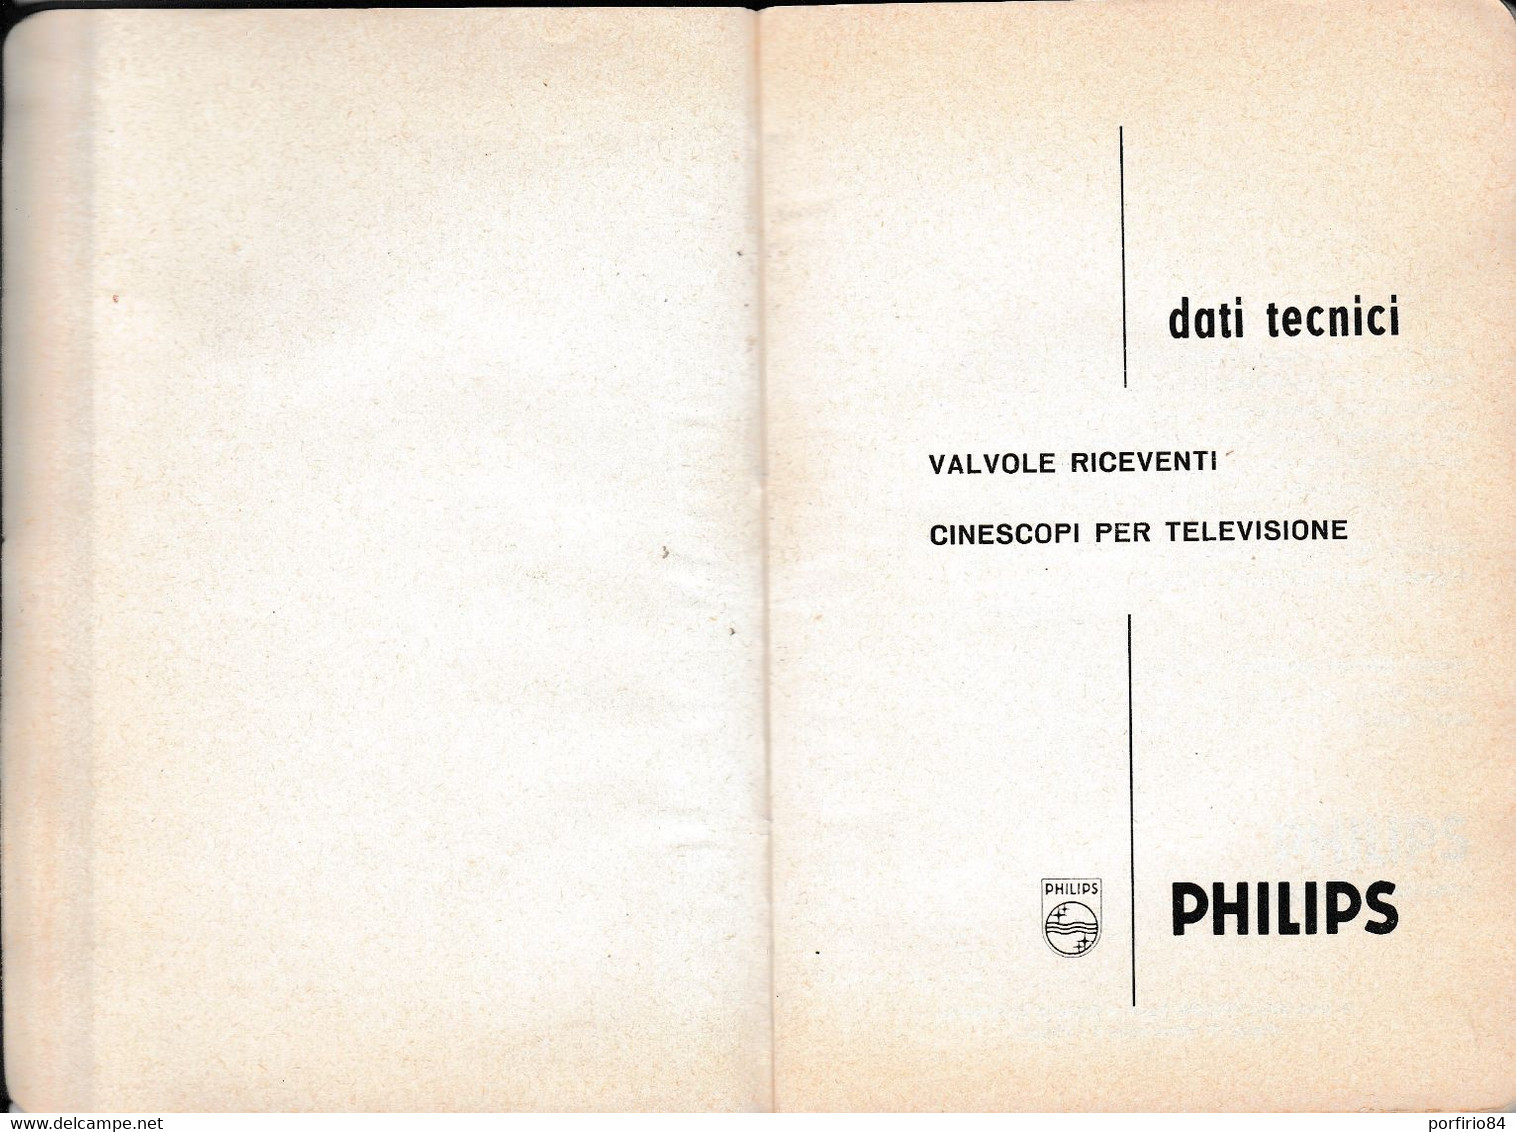 VALVOLE RICEVENTI CINESCOPI PER TELEVISIONE PHILIPS /DATI TECNICI_CATALOGO 1962 - Cinema & Music